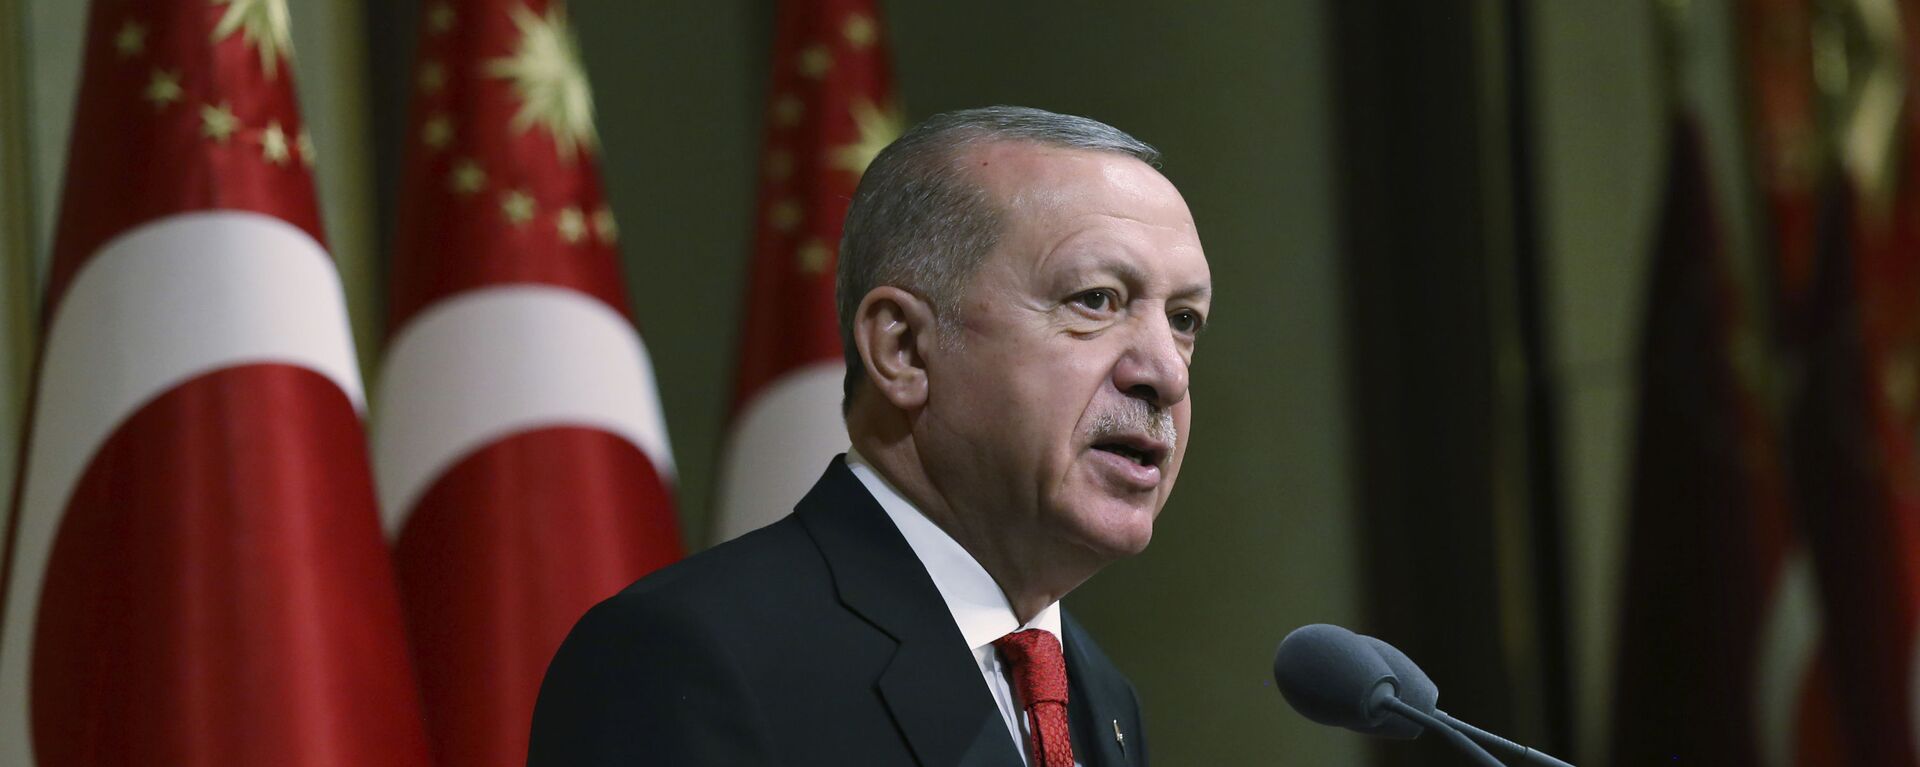 Tổng thống Thổ Nhĩ Kỳ Recep Tayyip Erdogan phát biểu tại dinh thự tổng thống ở Ankara - Sputnik Việt Nam, 1920, 23.09.2021